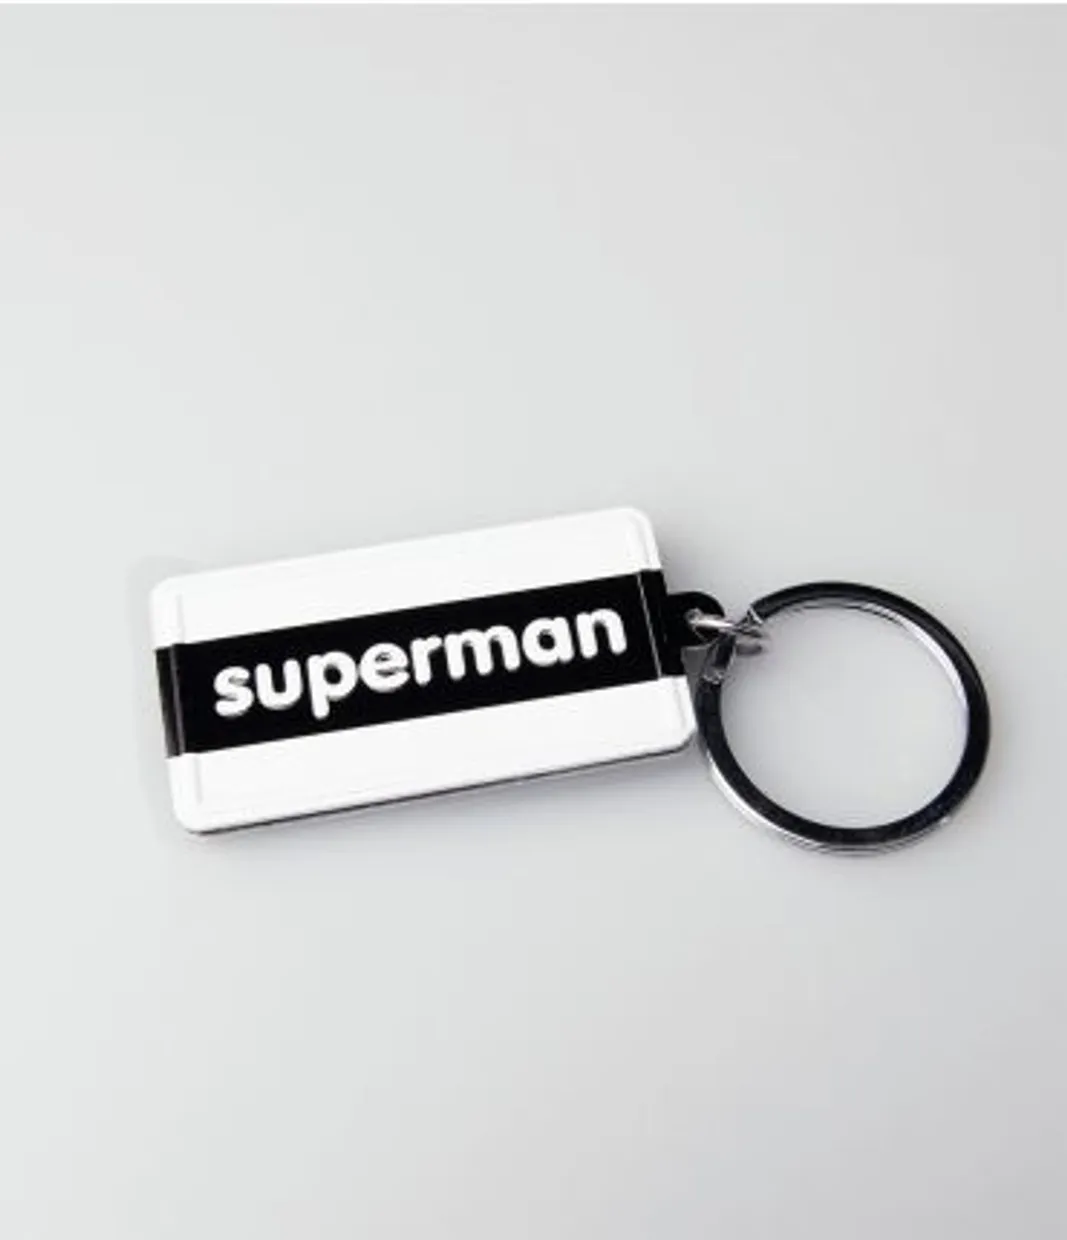 sleutelhanger "SUPERMAN"